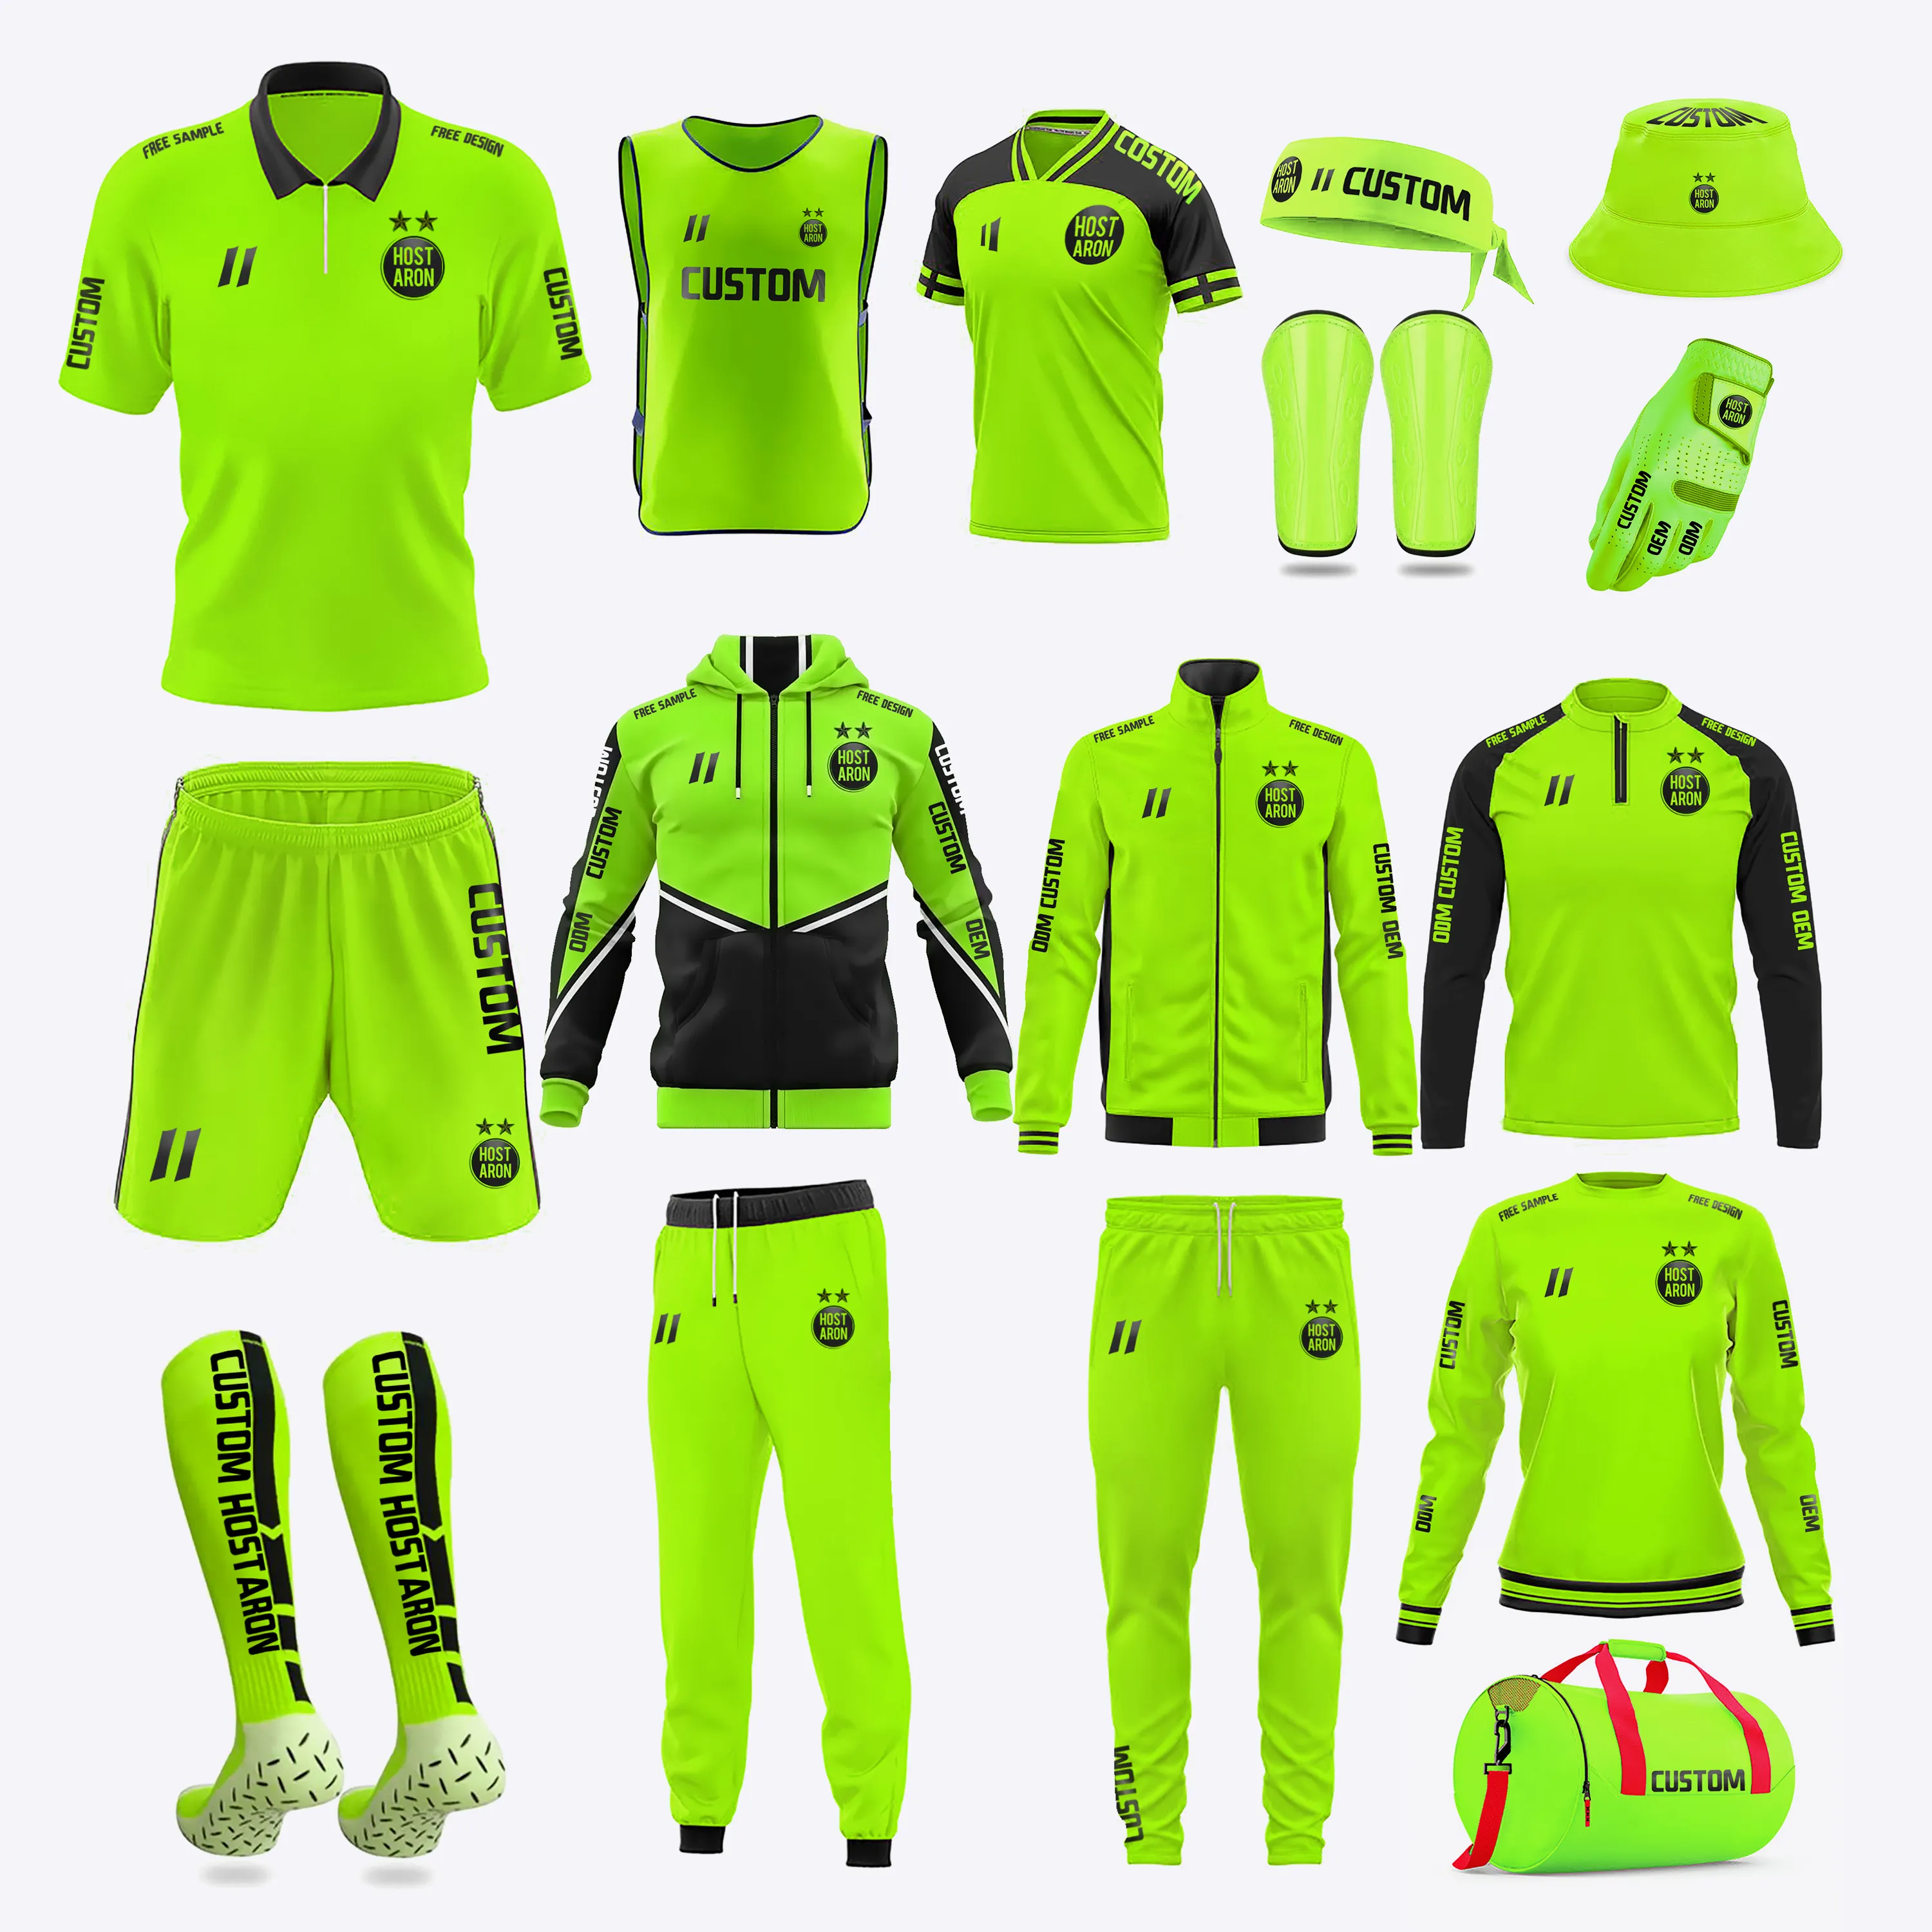 Hostaron Uniformes de futebol para equipes de futebol, camisas esportivas personalizadas de alta qualidade para homens, novo design, novidade de OEM